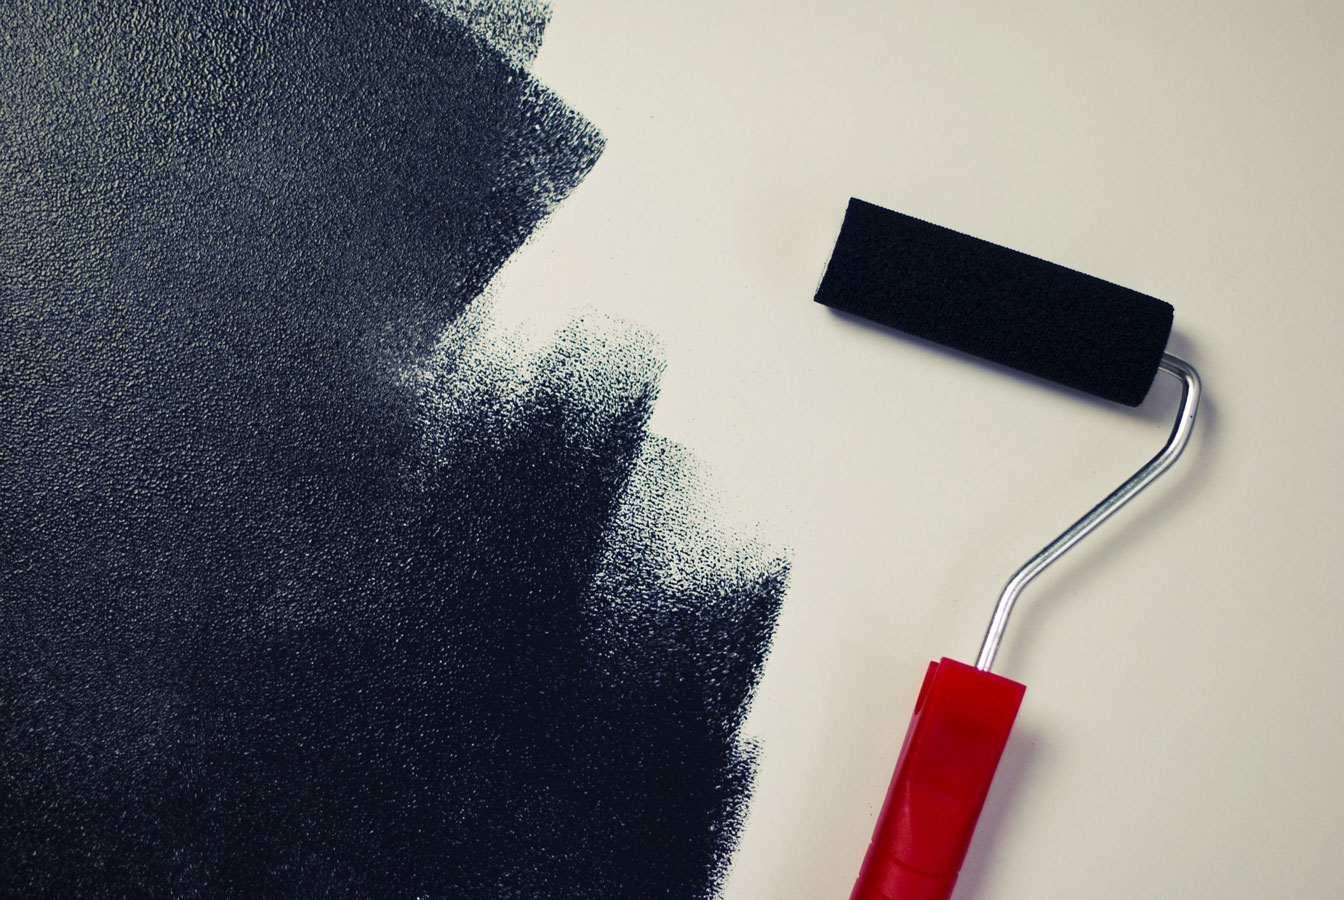 Zelf verven of je interieur laten schilderen door een vakman?